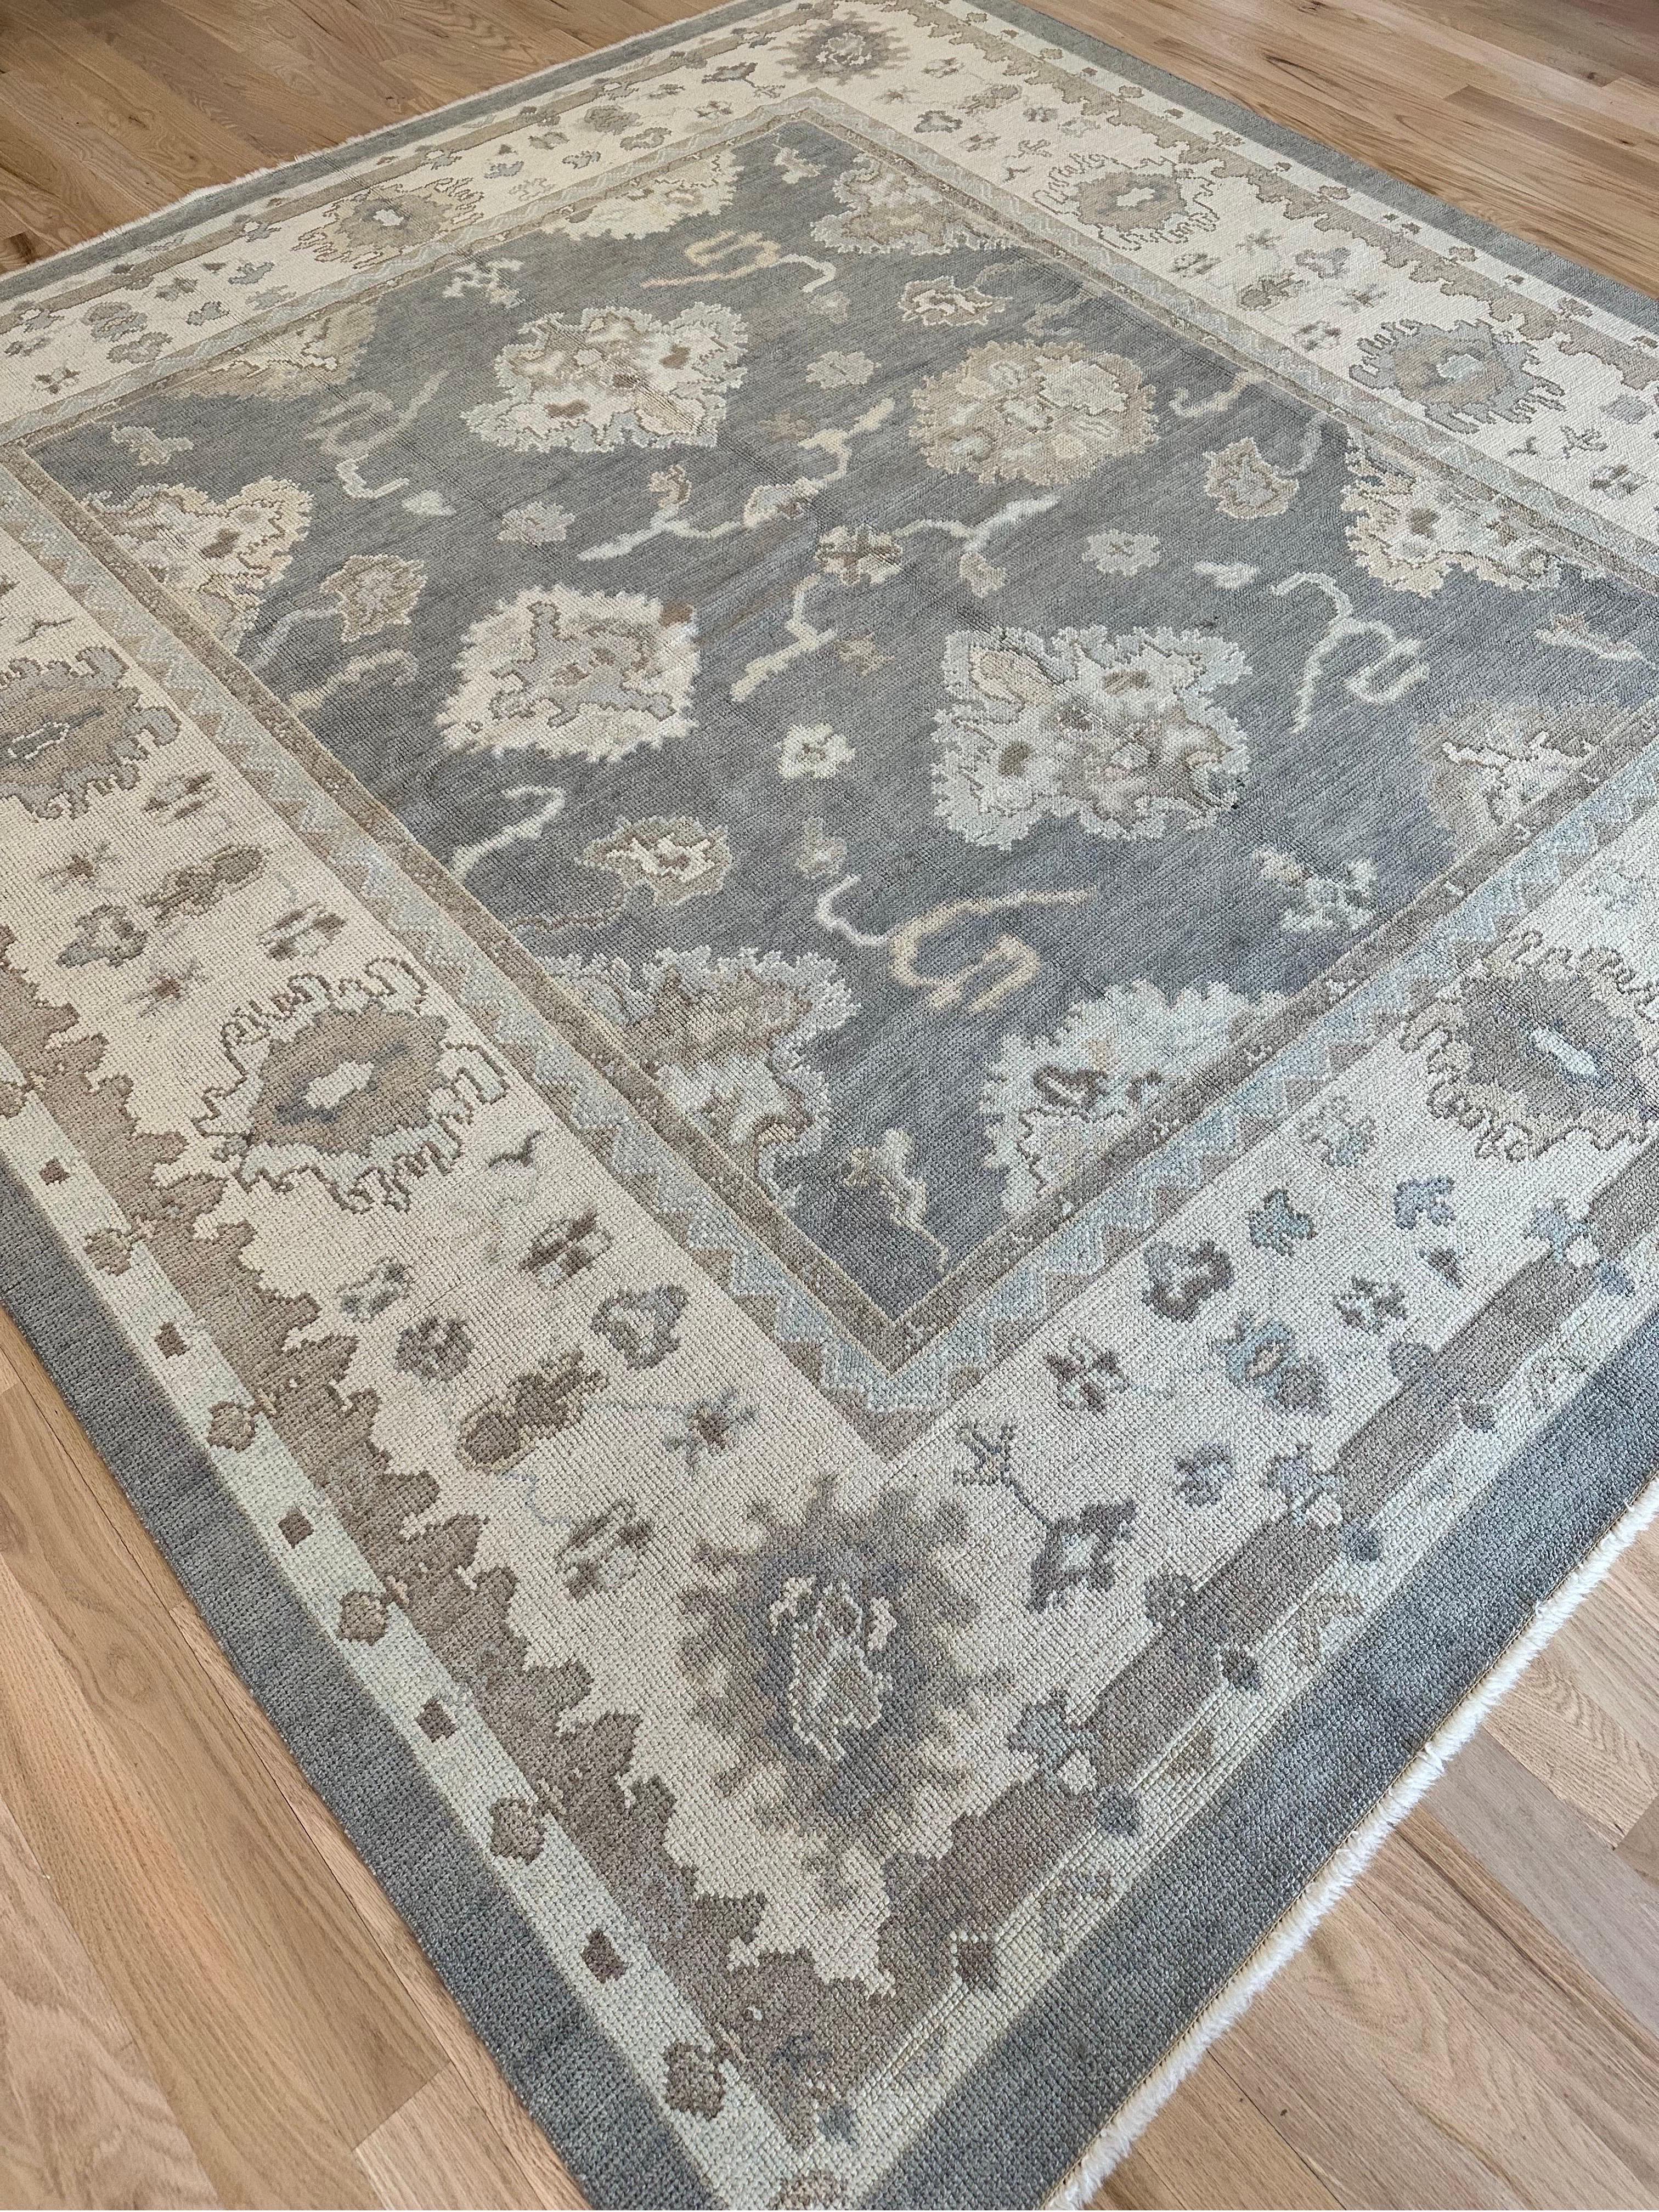 Vintage Oushak Carpet, Oriental Rug, Handmade Grey, Ivory, Saffron For Sale 5